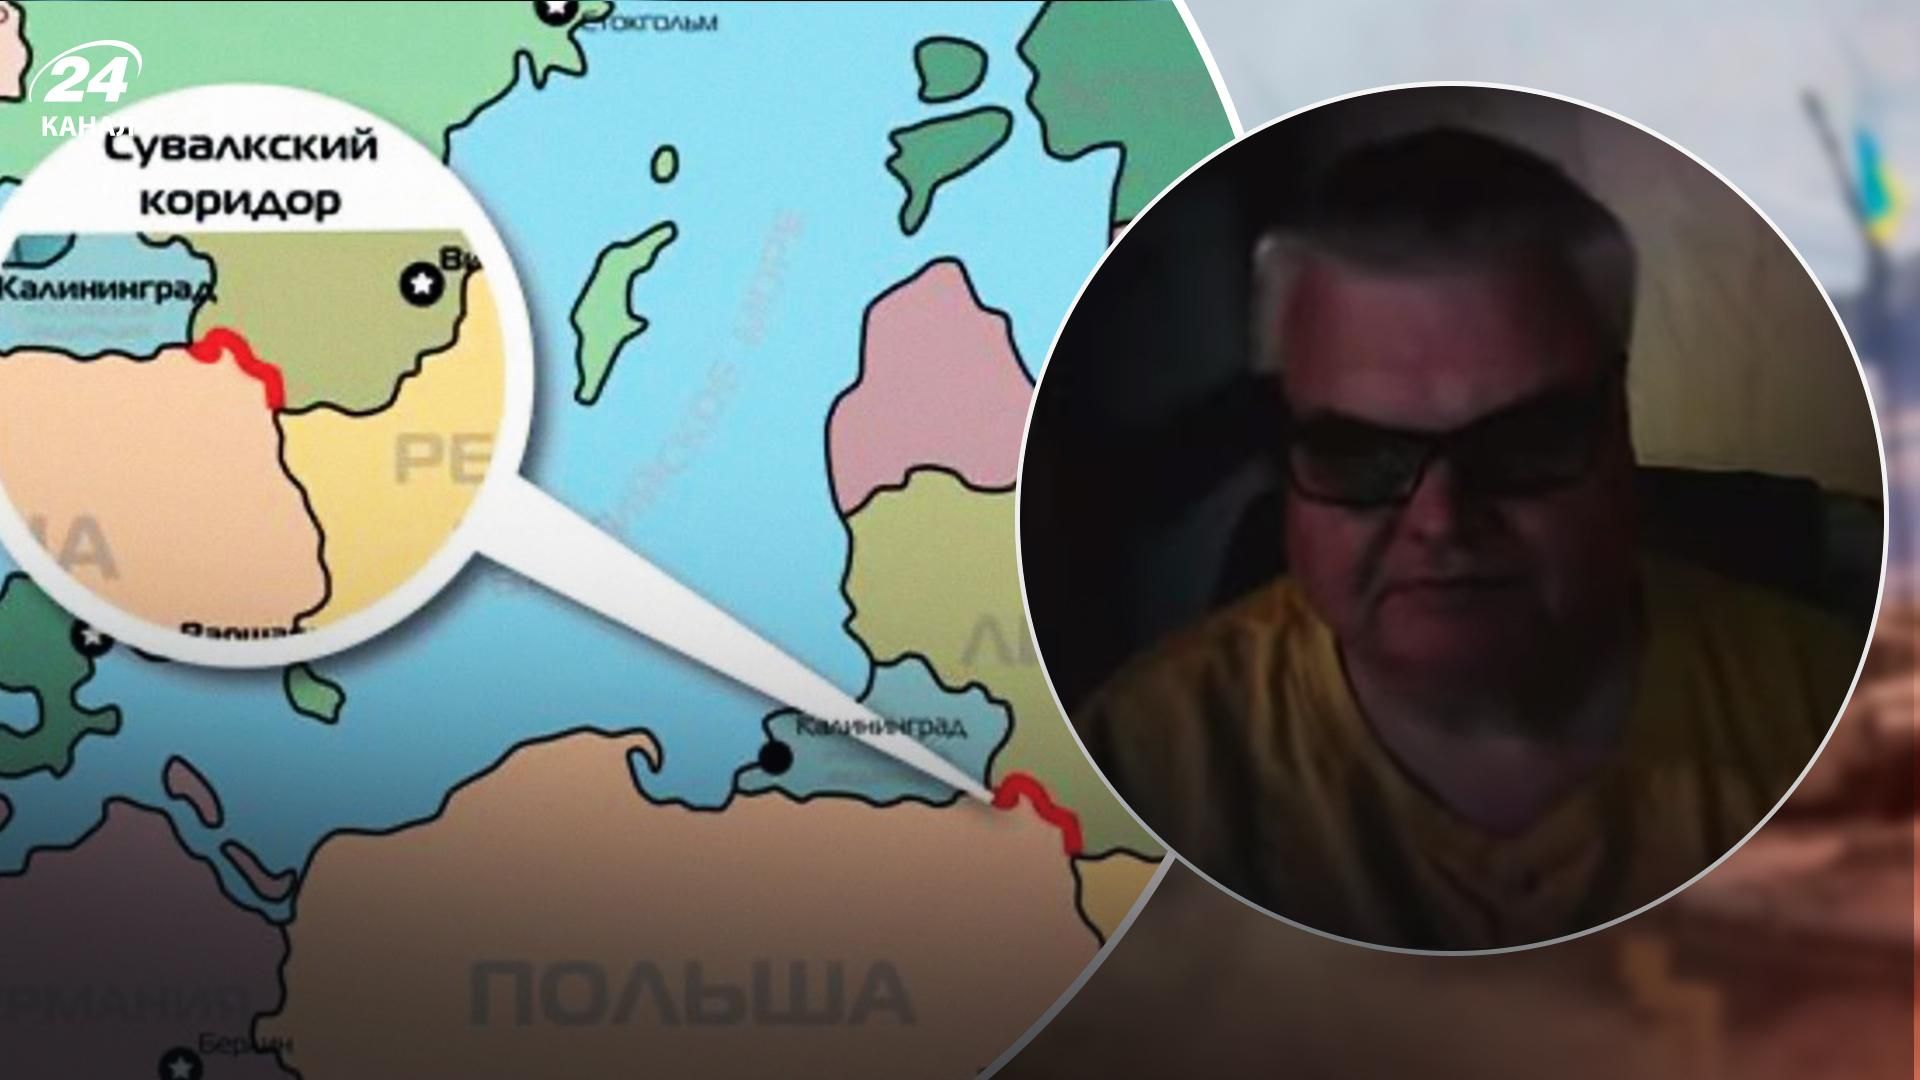 Вероятный удар по Сувальскому коридору - решится ли Россия - 24 Канал